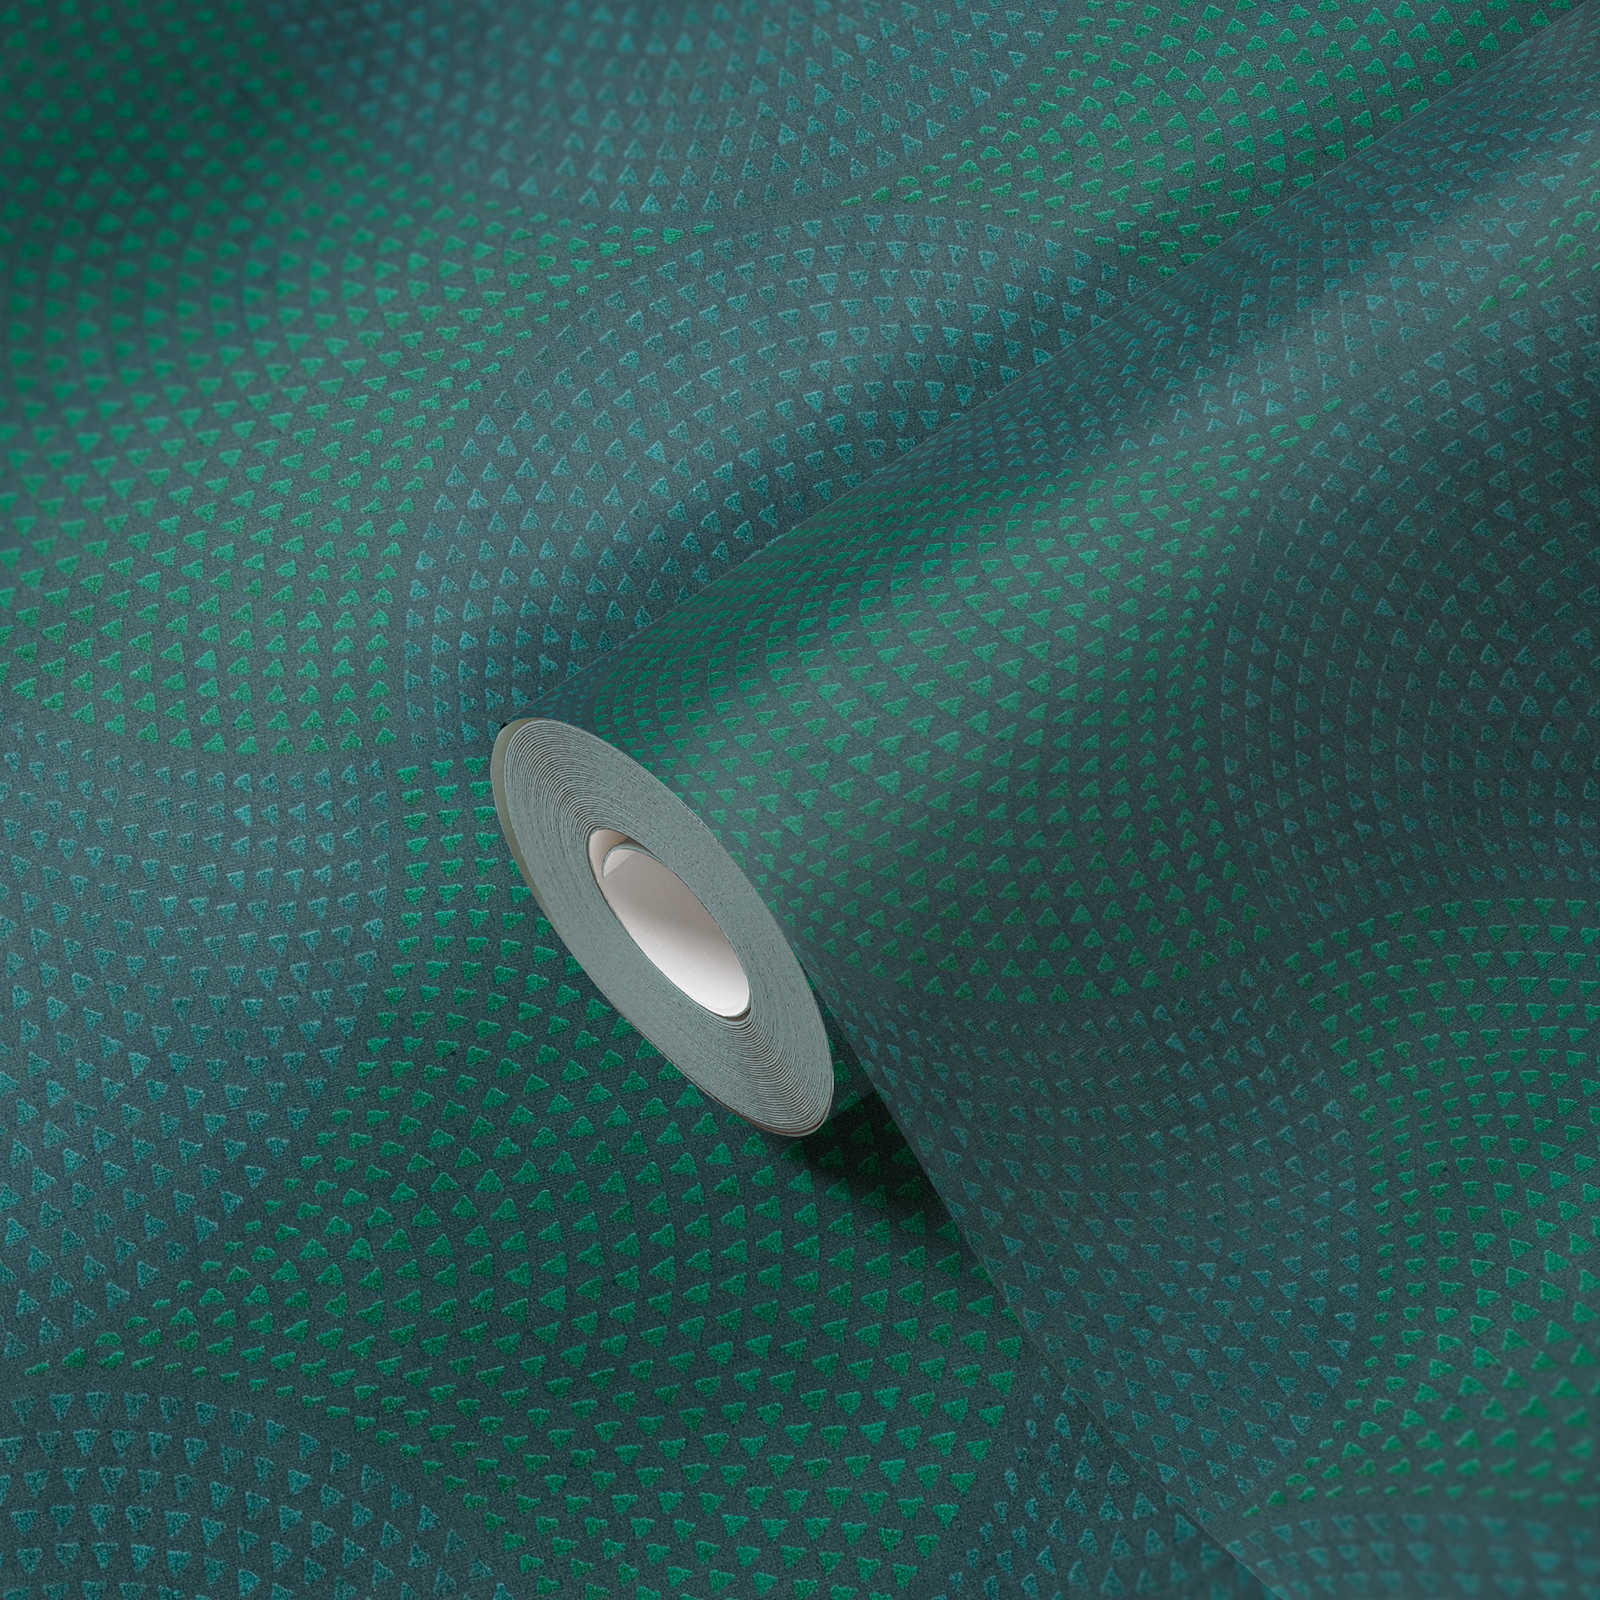             Vliestapete Metallic Design mit Mosaik Muster – Blau, Grün, Metallic
        